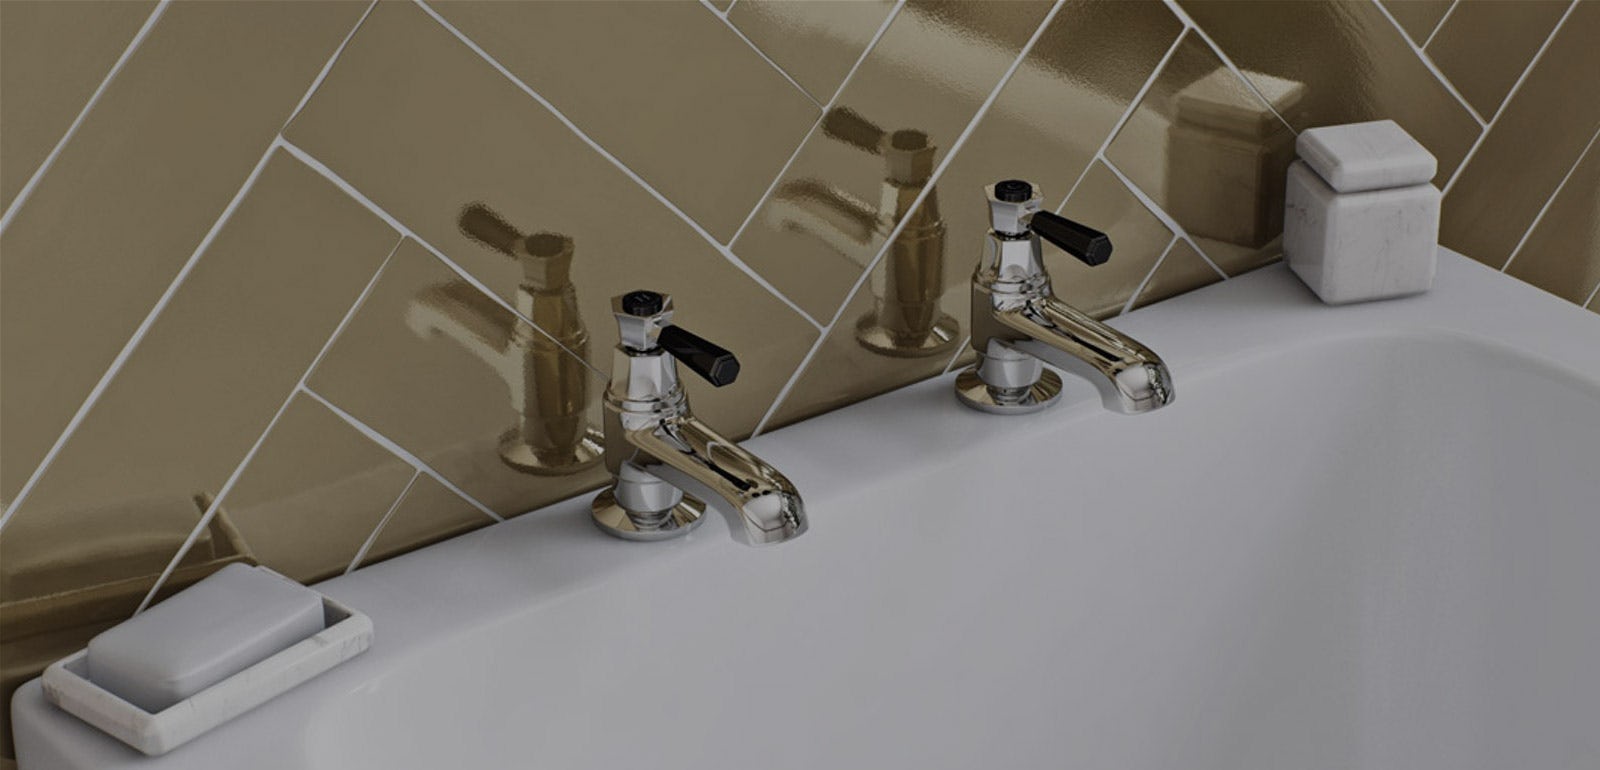 Drill Tap Holes In An Acrylic Bath, Drilling Holes In Acrylic Bathtub